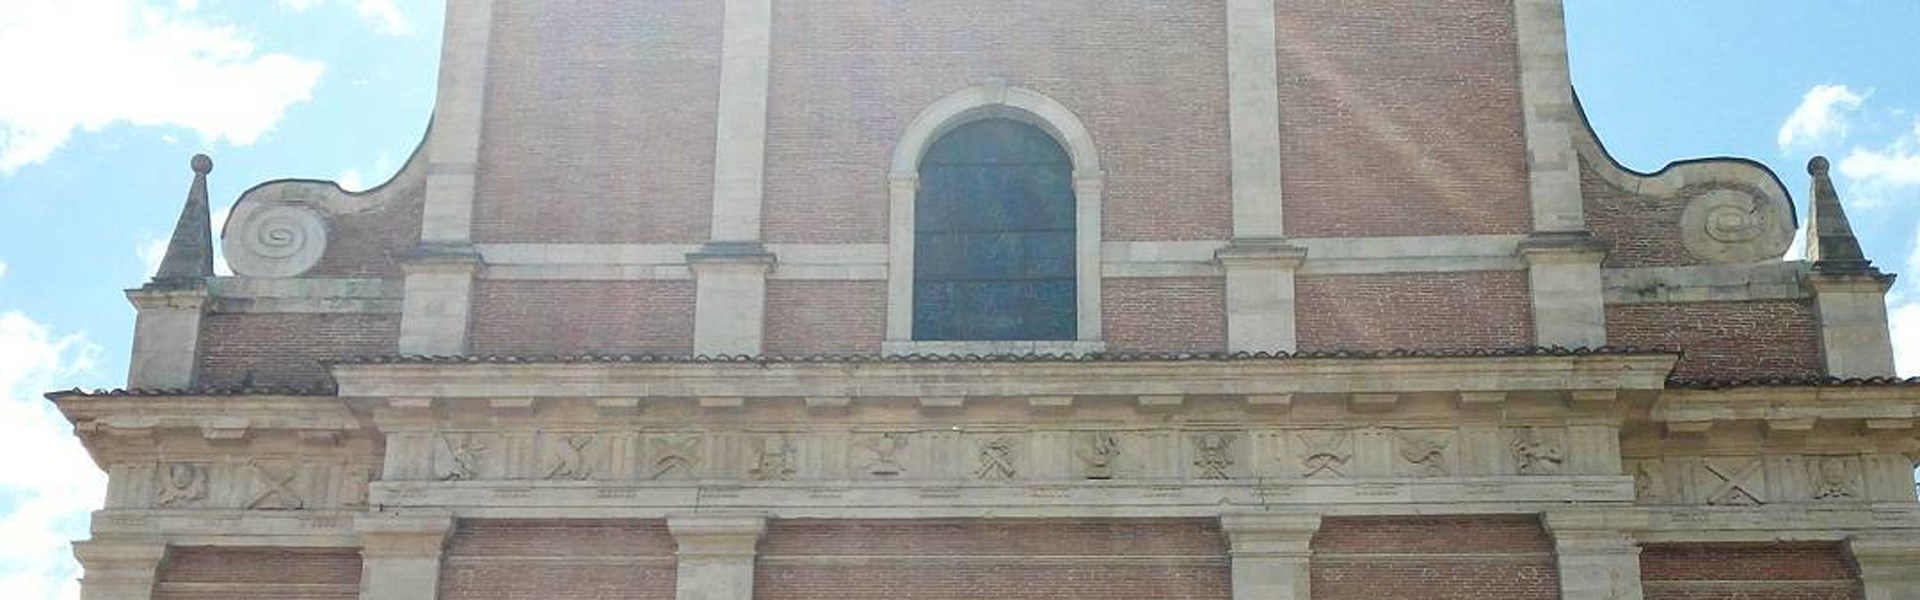 Fabriano - Cattedrale San Venanzio - esterno